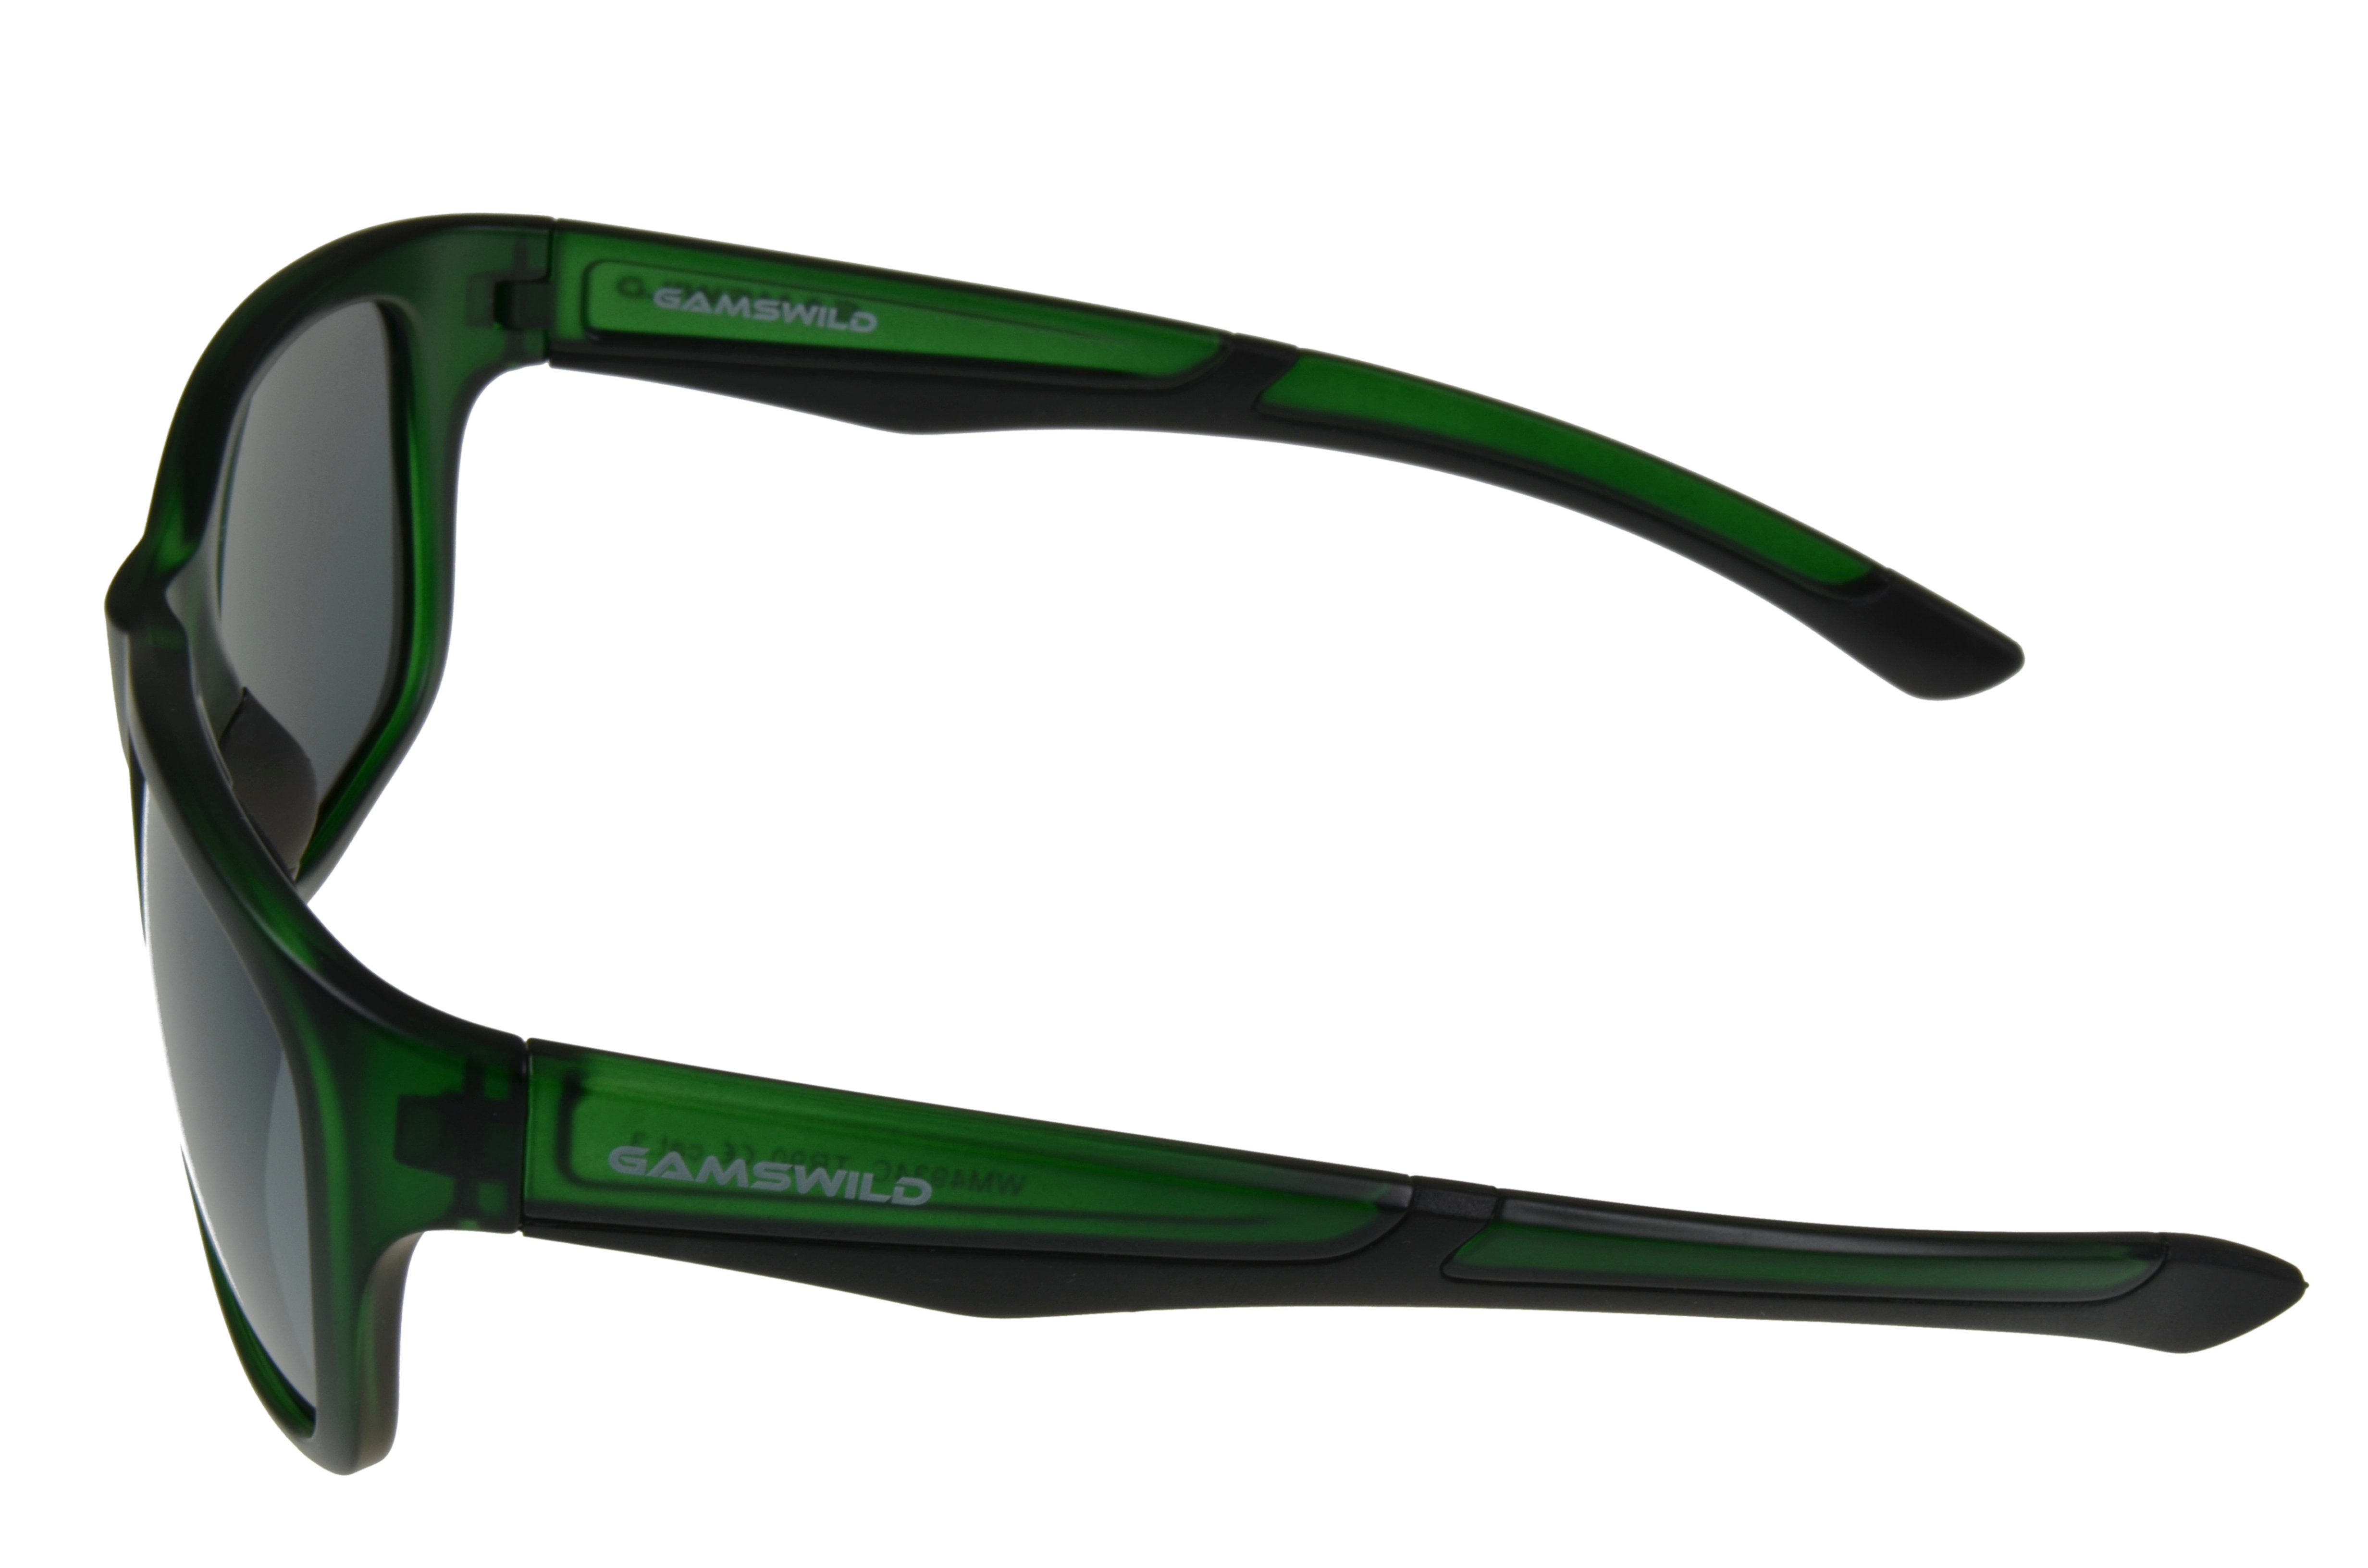 -transparent Damen Herren Sonnenbrille blau/grau schwarz-grün, TR90 GAMSSTYLE Komfortbügel, Gamswild TR90 Mode grün, WM4934 Unisex Brille